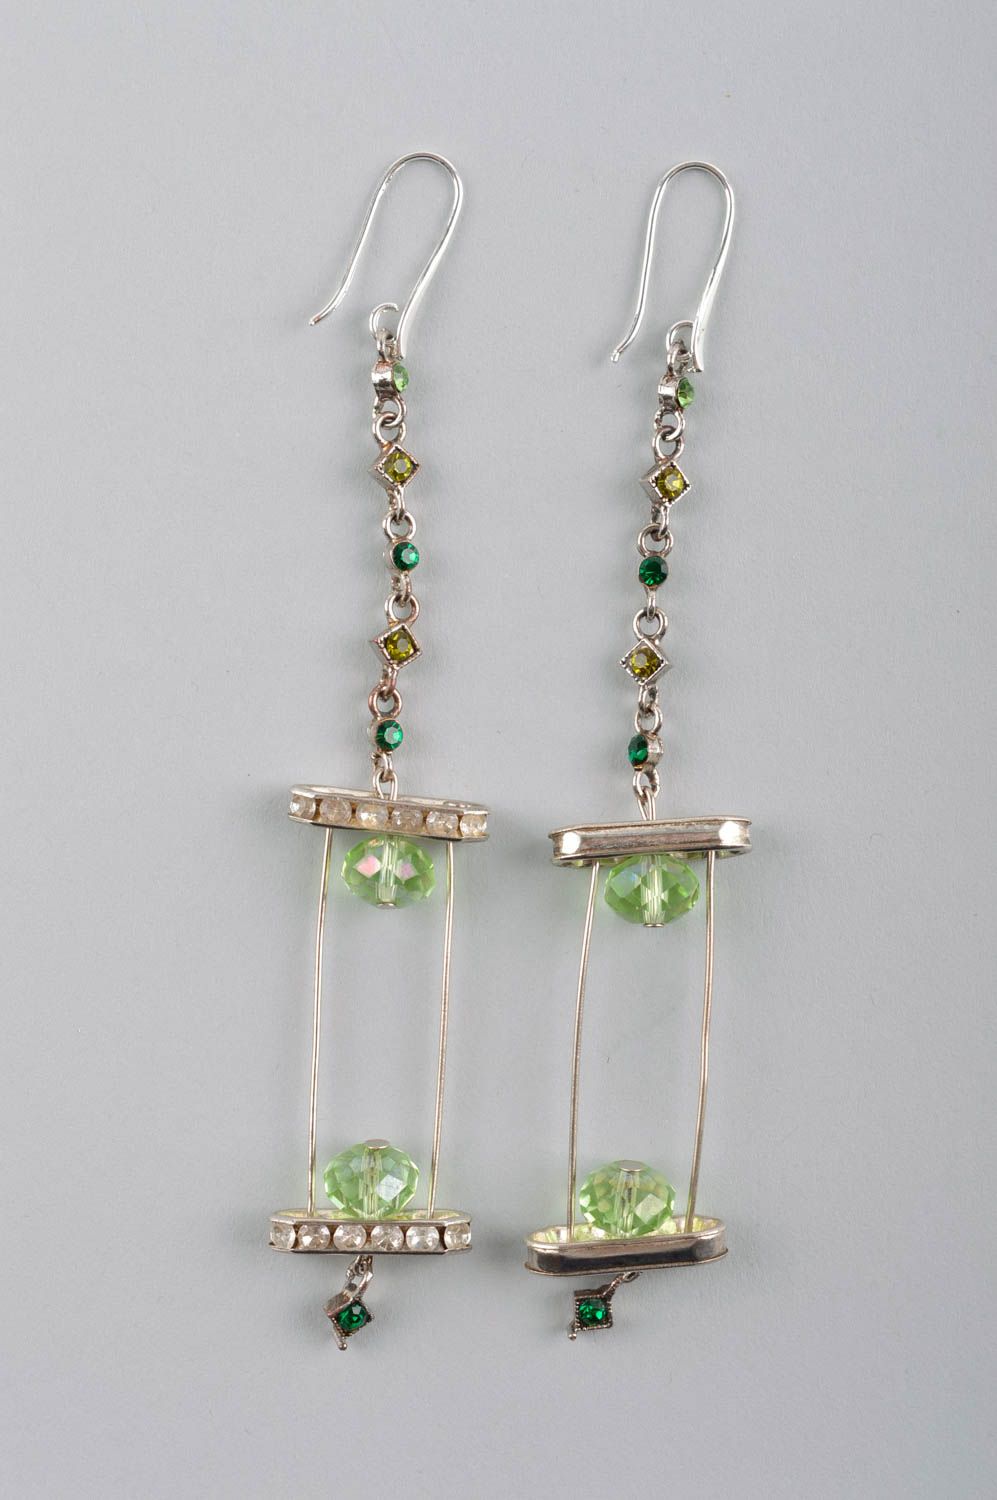 Handmade earrings fashion jewelry dangling earrings best gifts for women photo 3